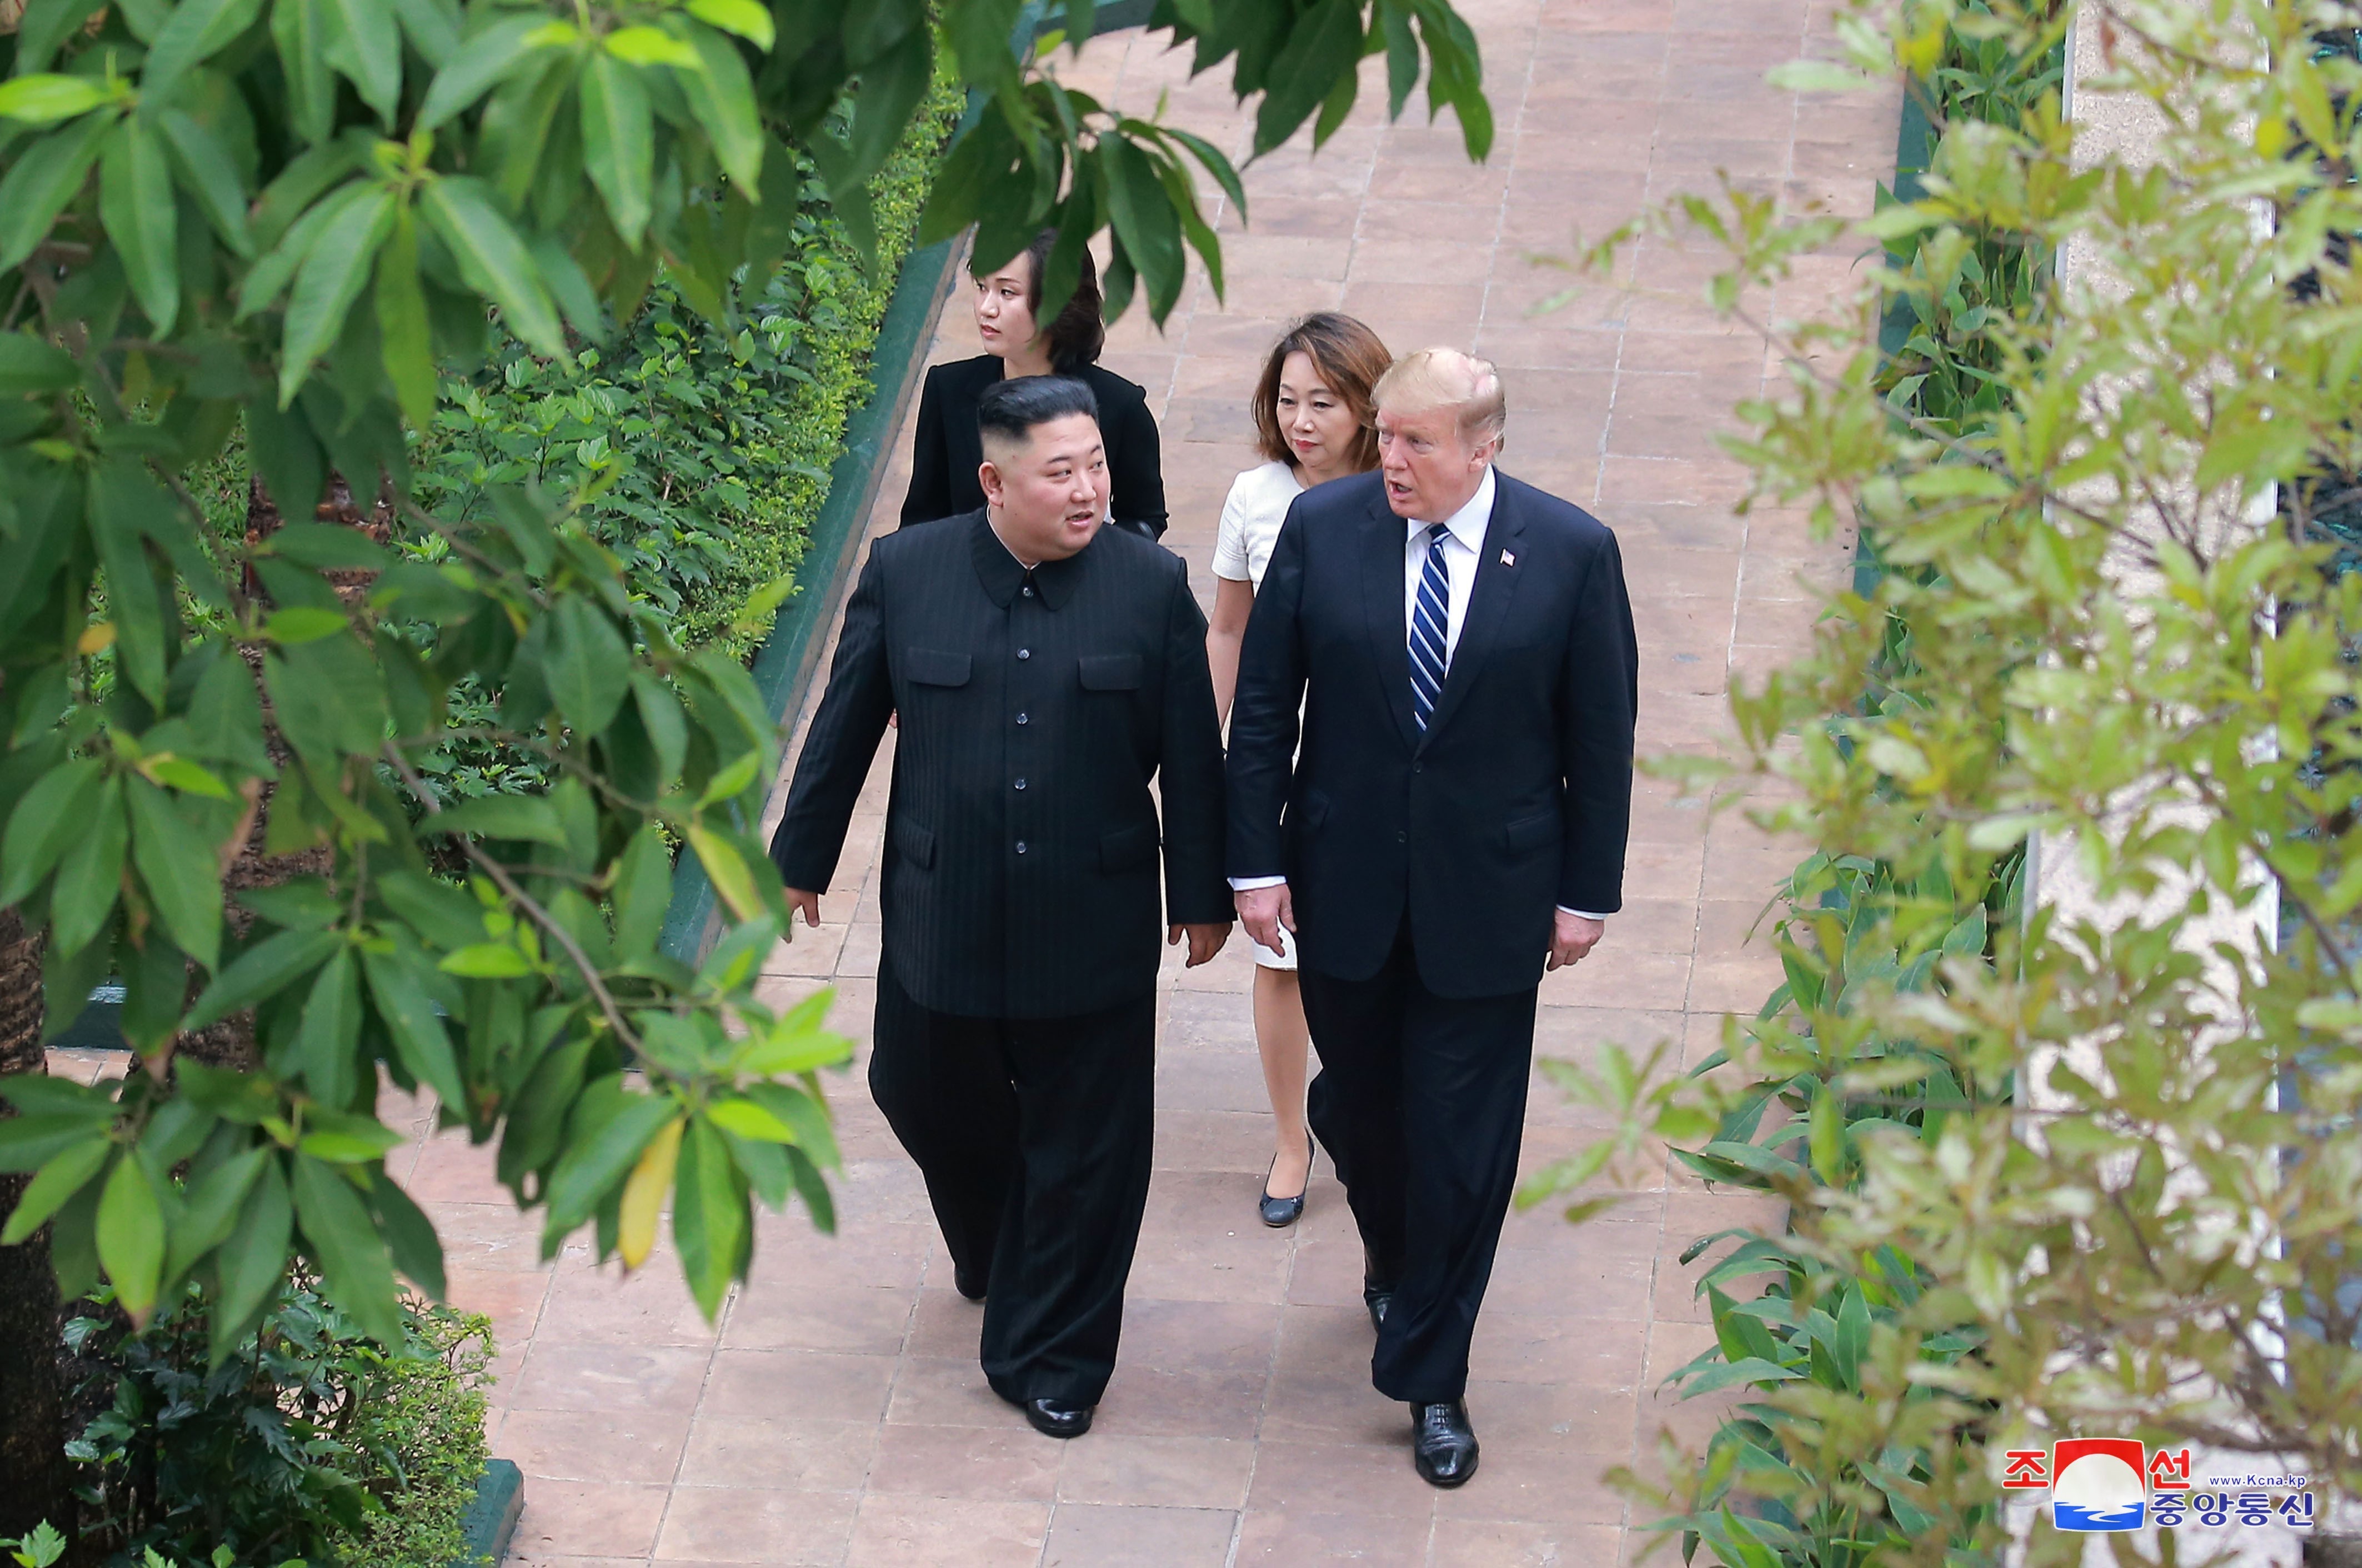 Tổng thống Mỹ Donald Trump (phải) và Chủ tịch Triều Tiên Kim Jong-un tại hội nghị thượng đỉnh Mỹ-Triều lần hai ở Hà Nội ngày 28/2/2019. (Ảnh: Yonhap/TTXVN)